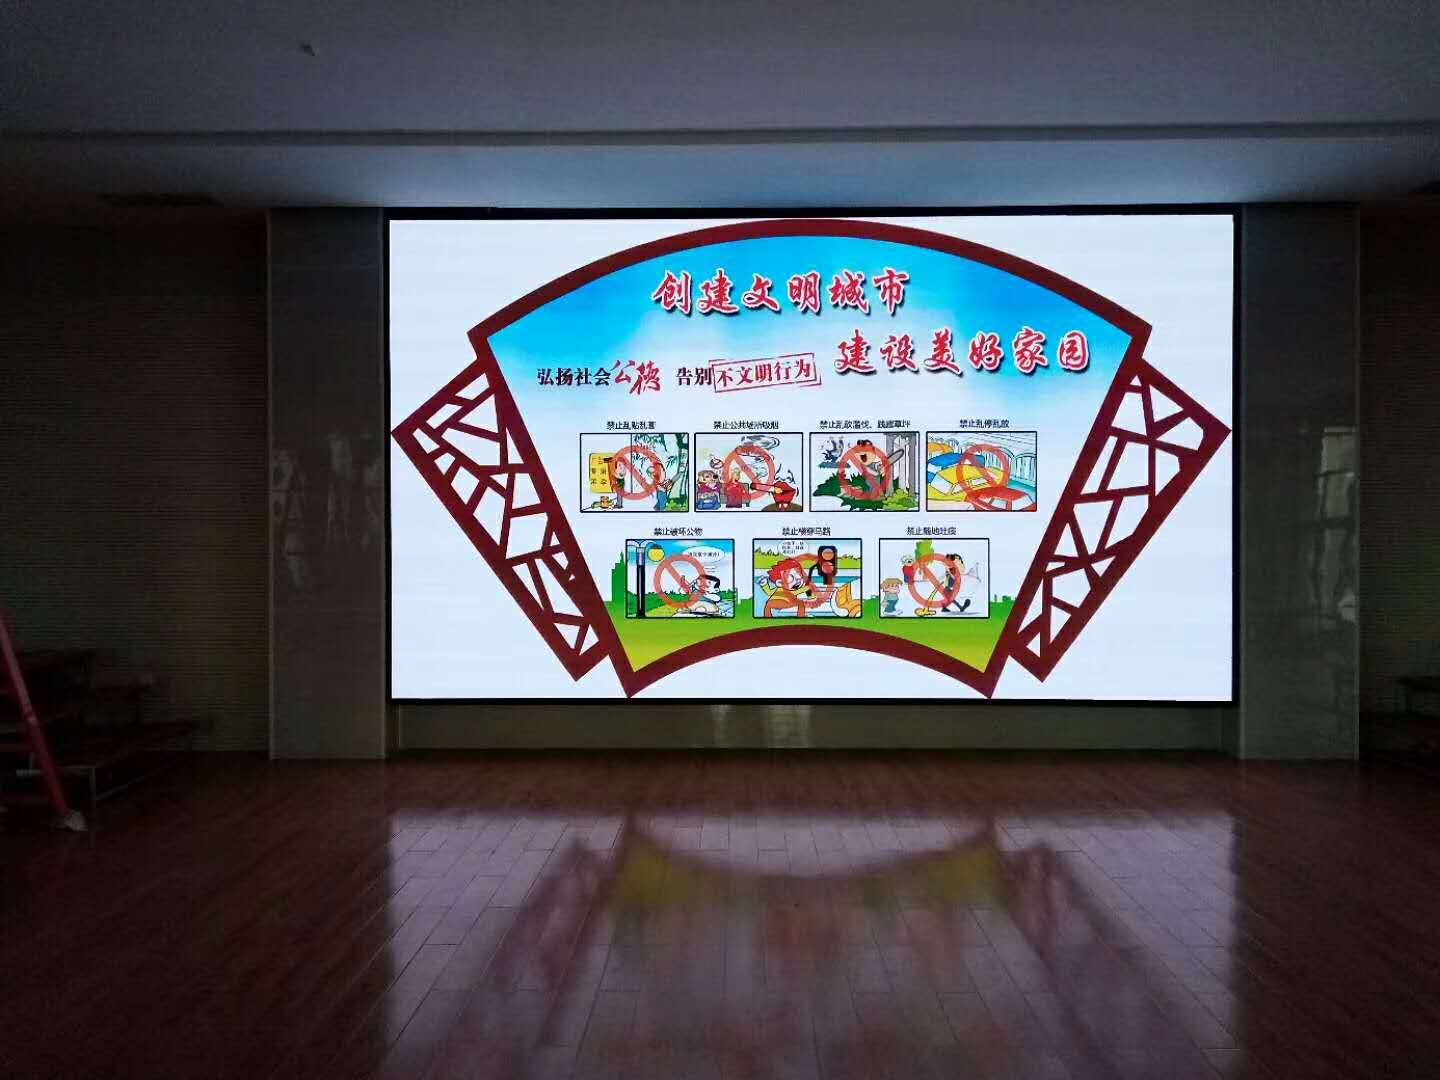 潍坊户外高端全防护节能电子显示屏 室内屏 一站式工程品牌服务商